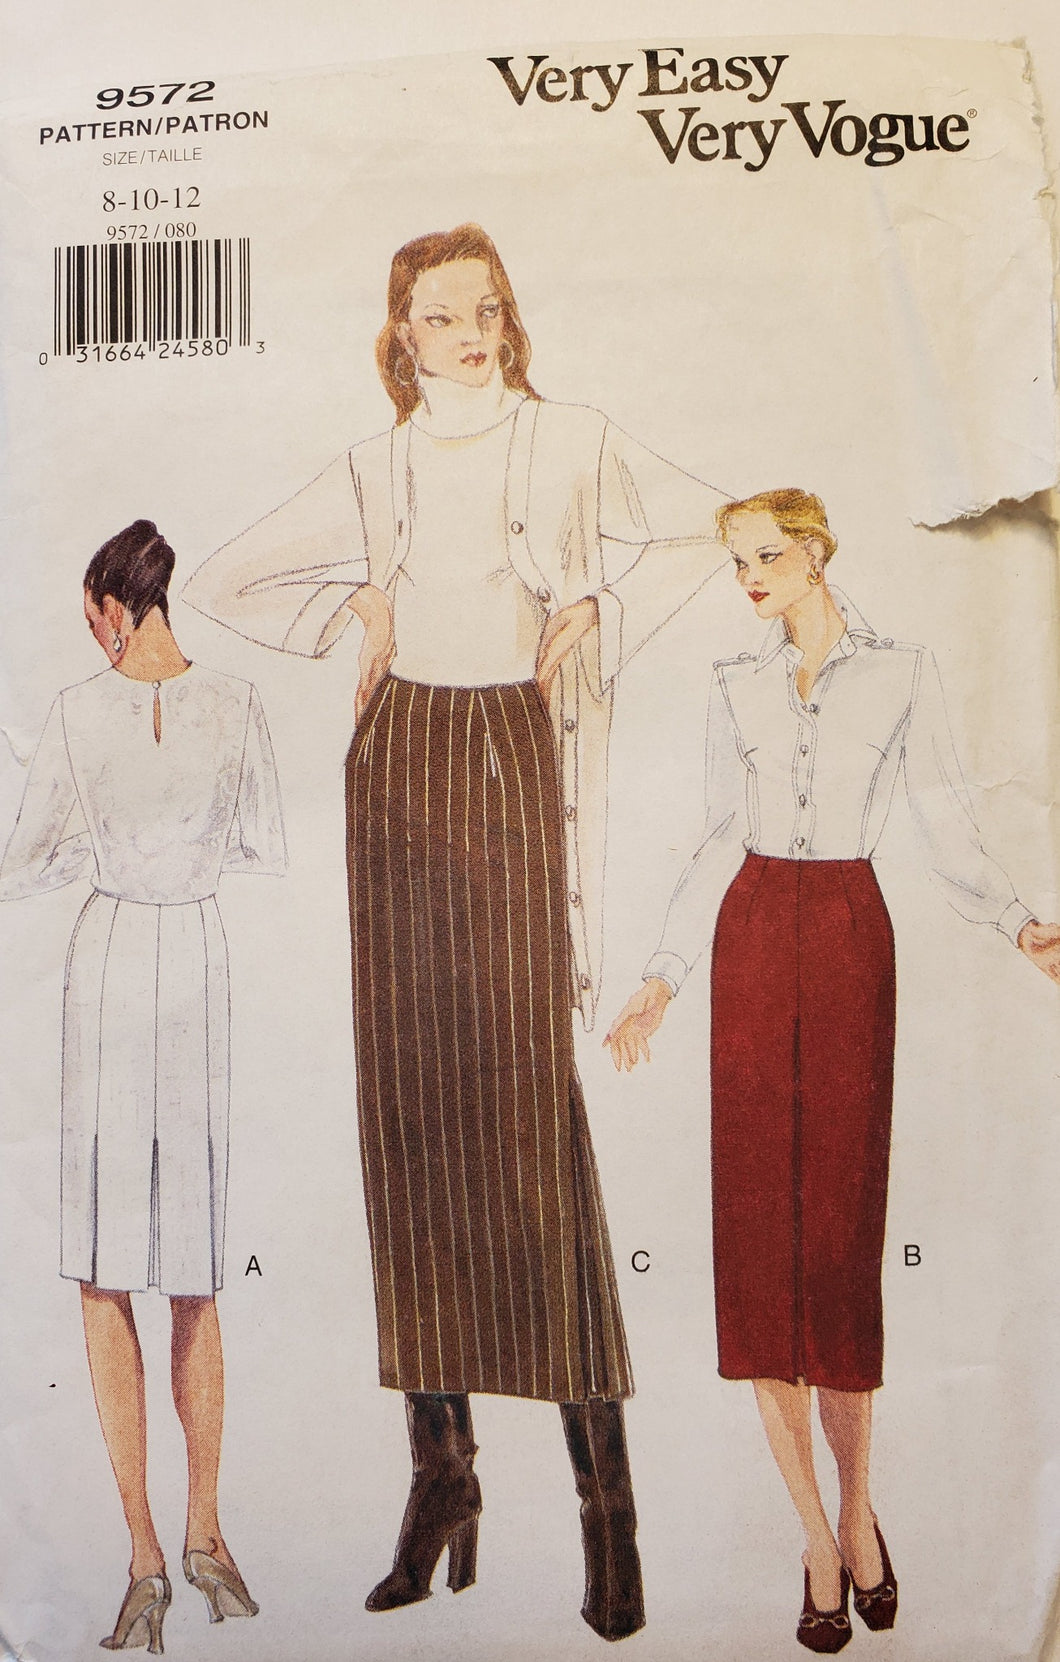 Vogue Pattern 9572 UNCUT Women's Skirts Size 8-10-12, Vintage